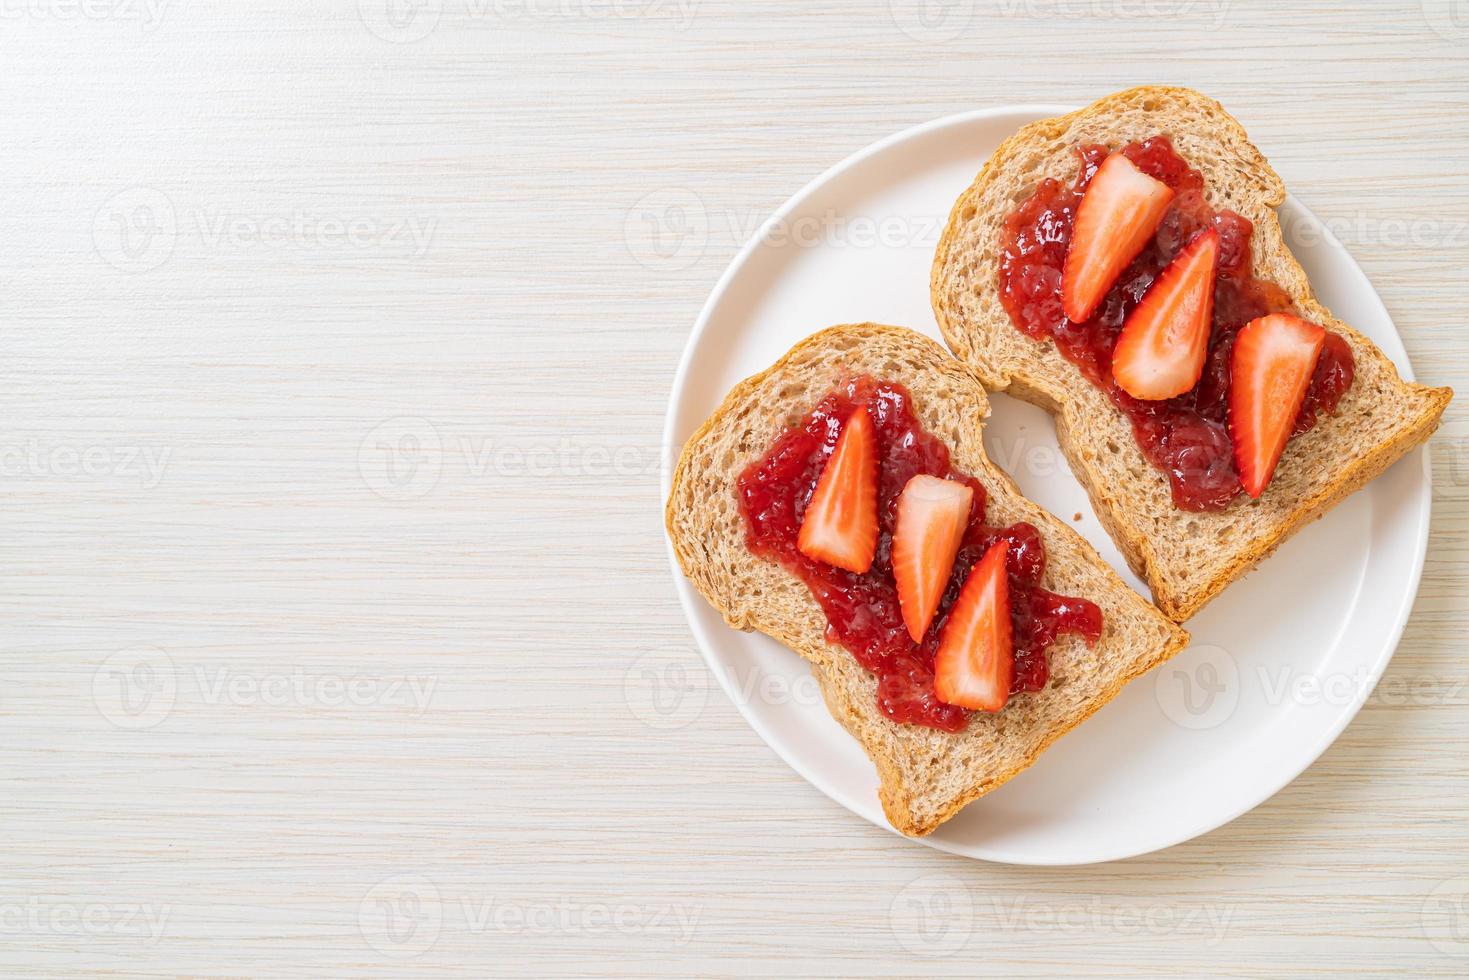 pain de blé entier fait maison avec confiture de fraise et fraise fraîche photo